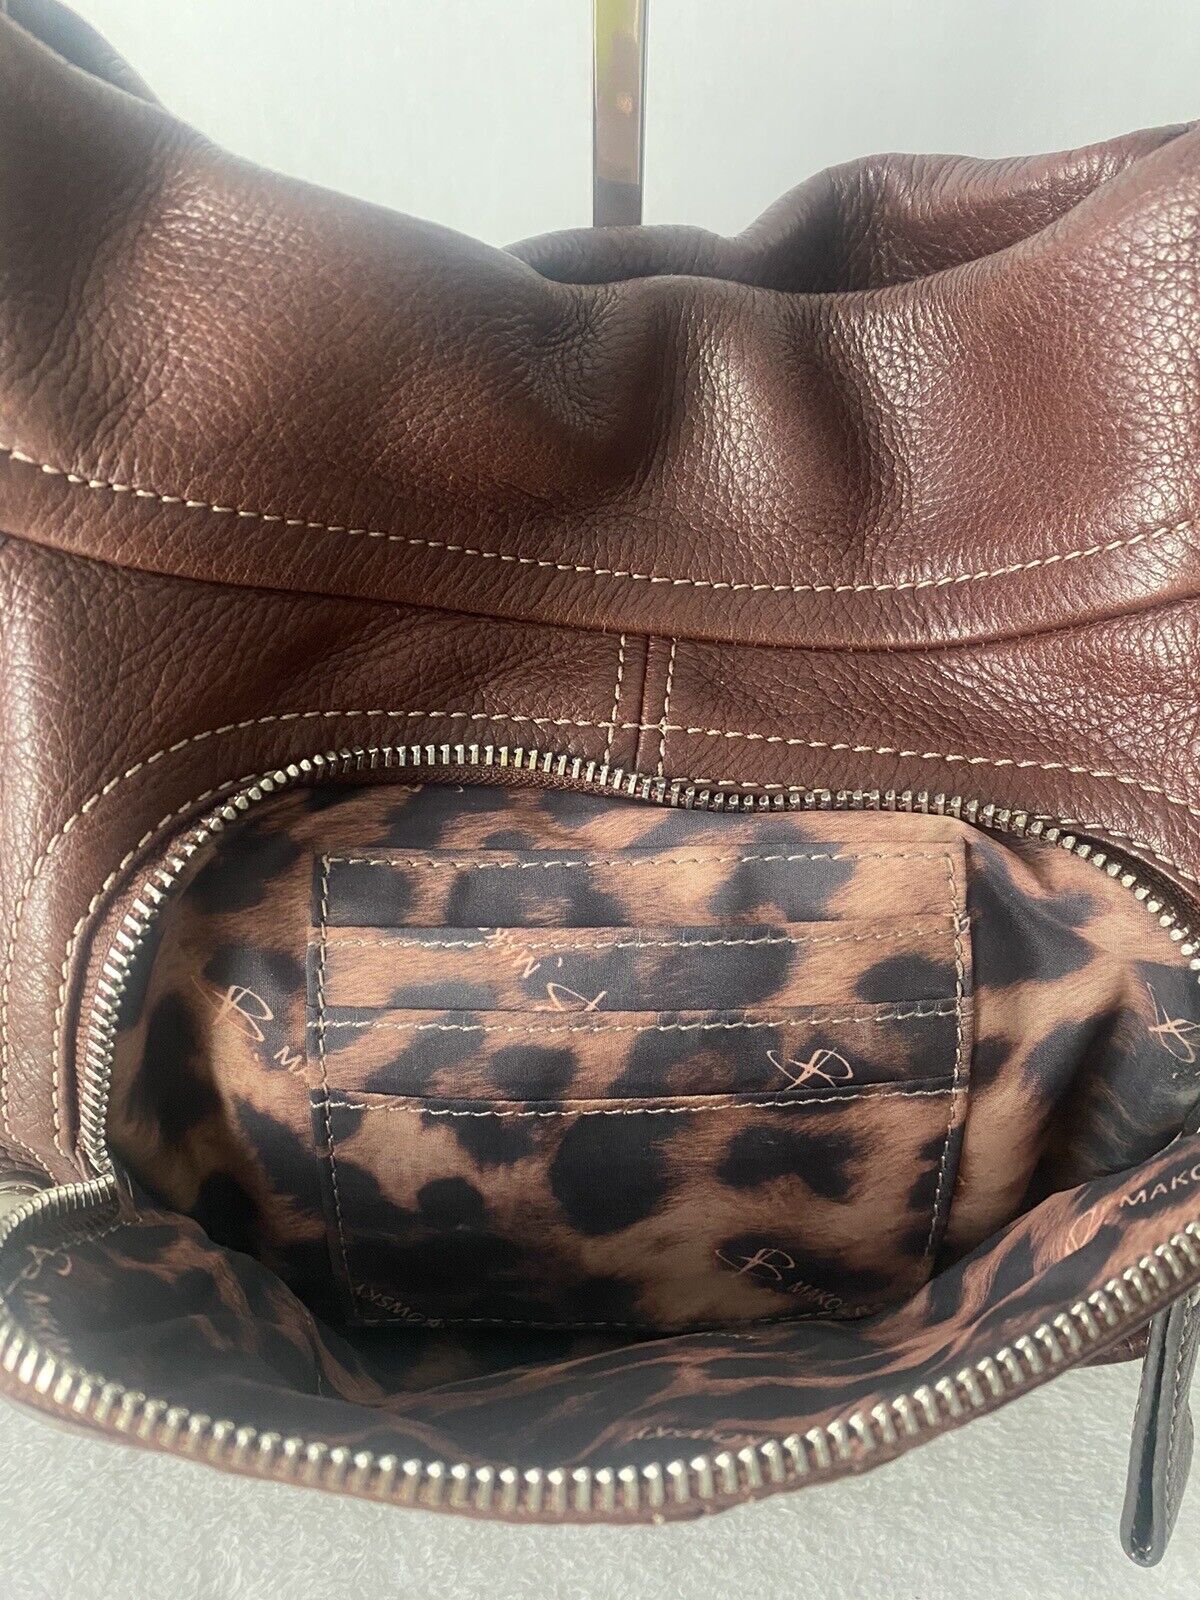 B Makowsky Brown Leather Hobo Shoulder Bag - image 11